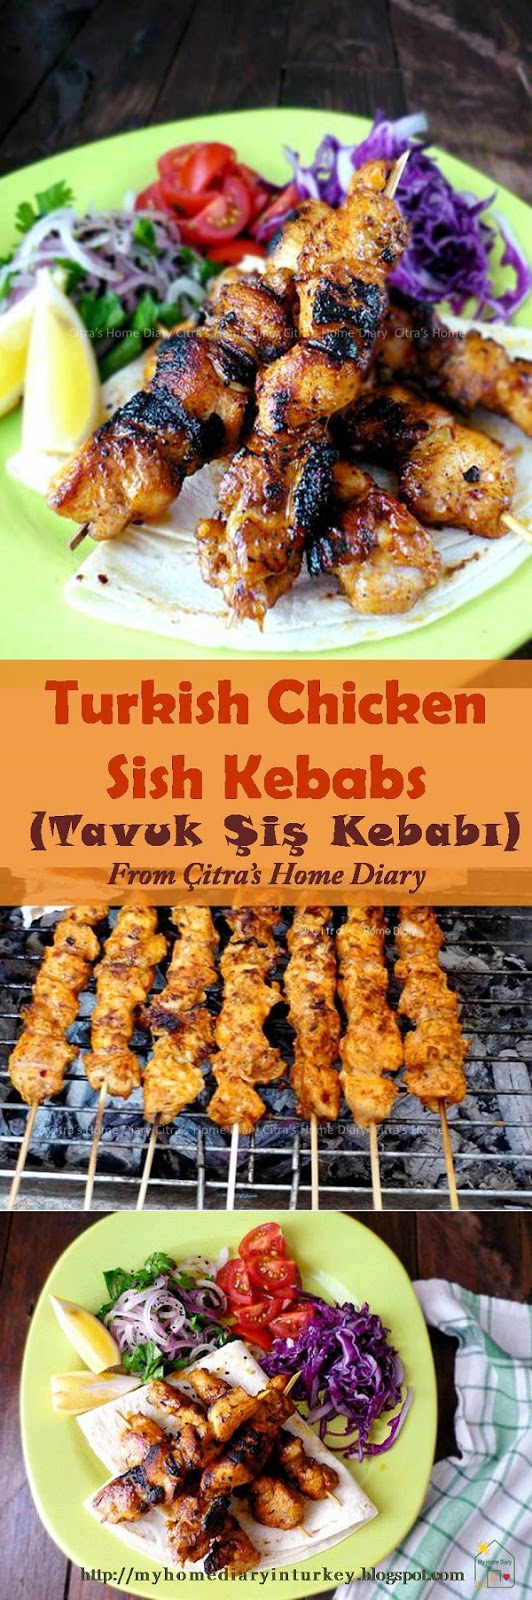 Citra's Home Diary: Tavuk Şiş Kebabı / Turkish Style Chicken Sish Kebabs